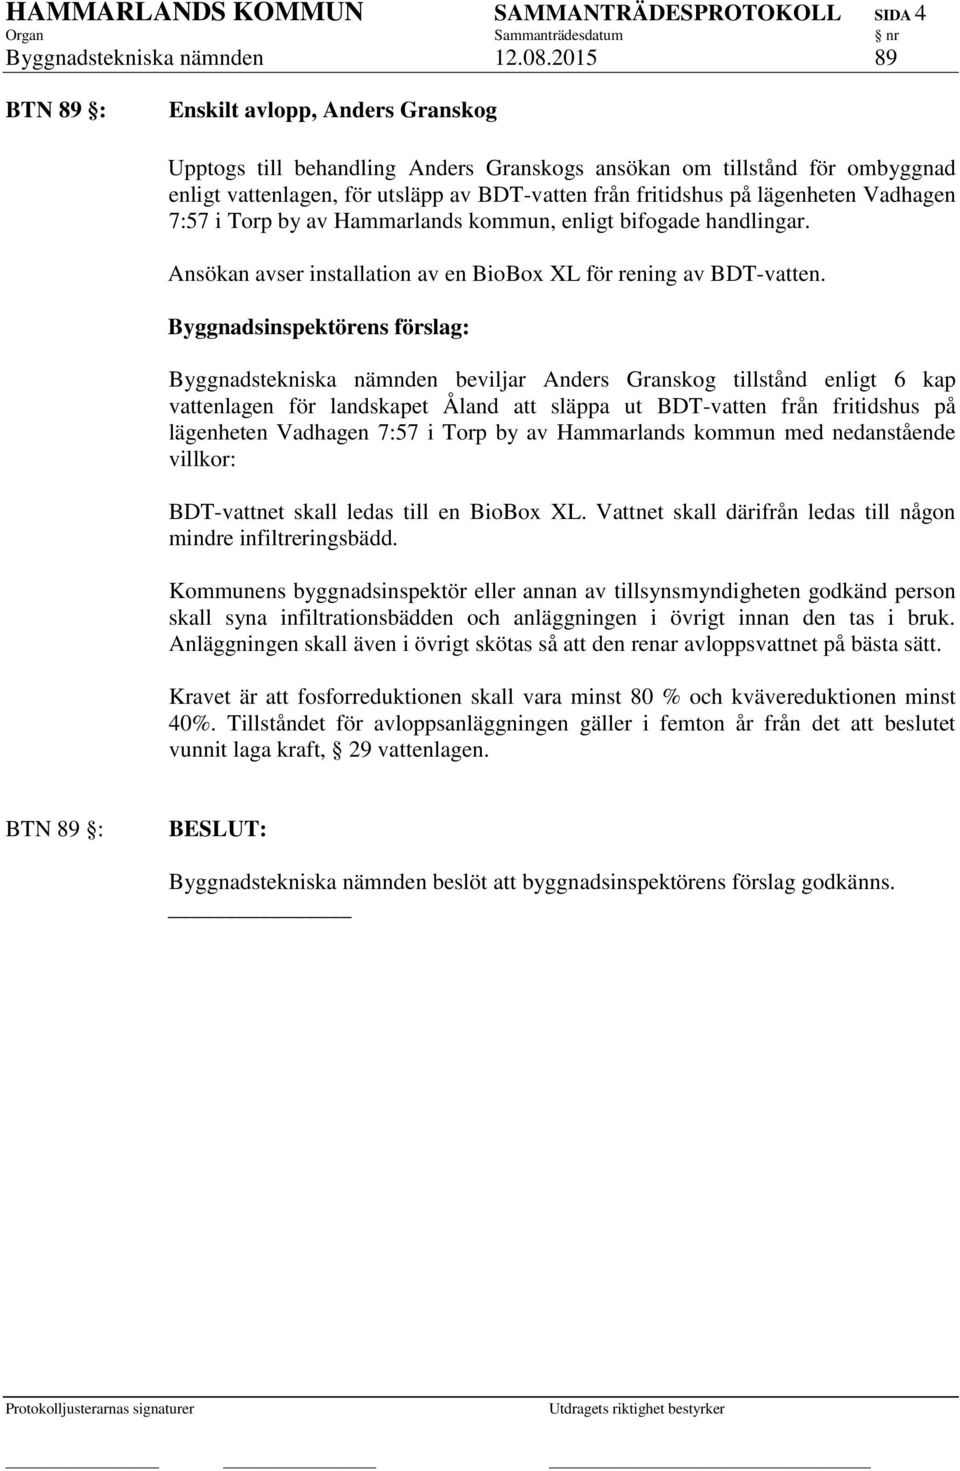 lägenheten Vadhagen 7:57 i Torp by av Hammarlands kommun, enligt bifogade handlingar. Ansökan avser installation av en BioBox XL för rening av BDT-vatten.